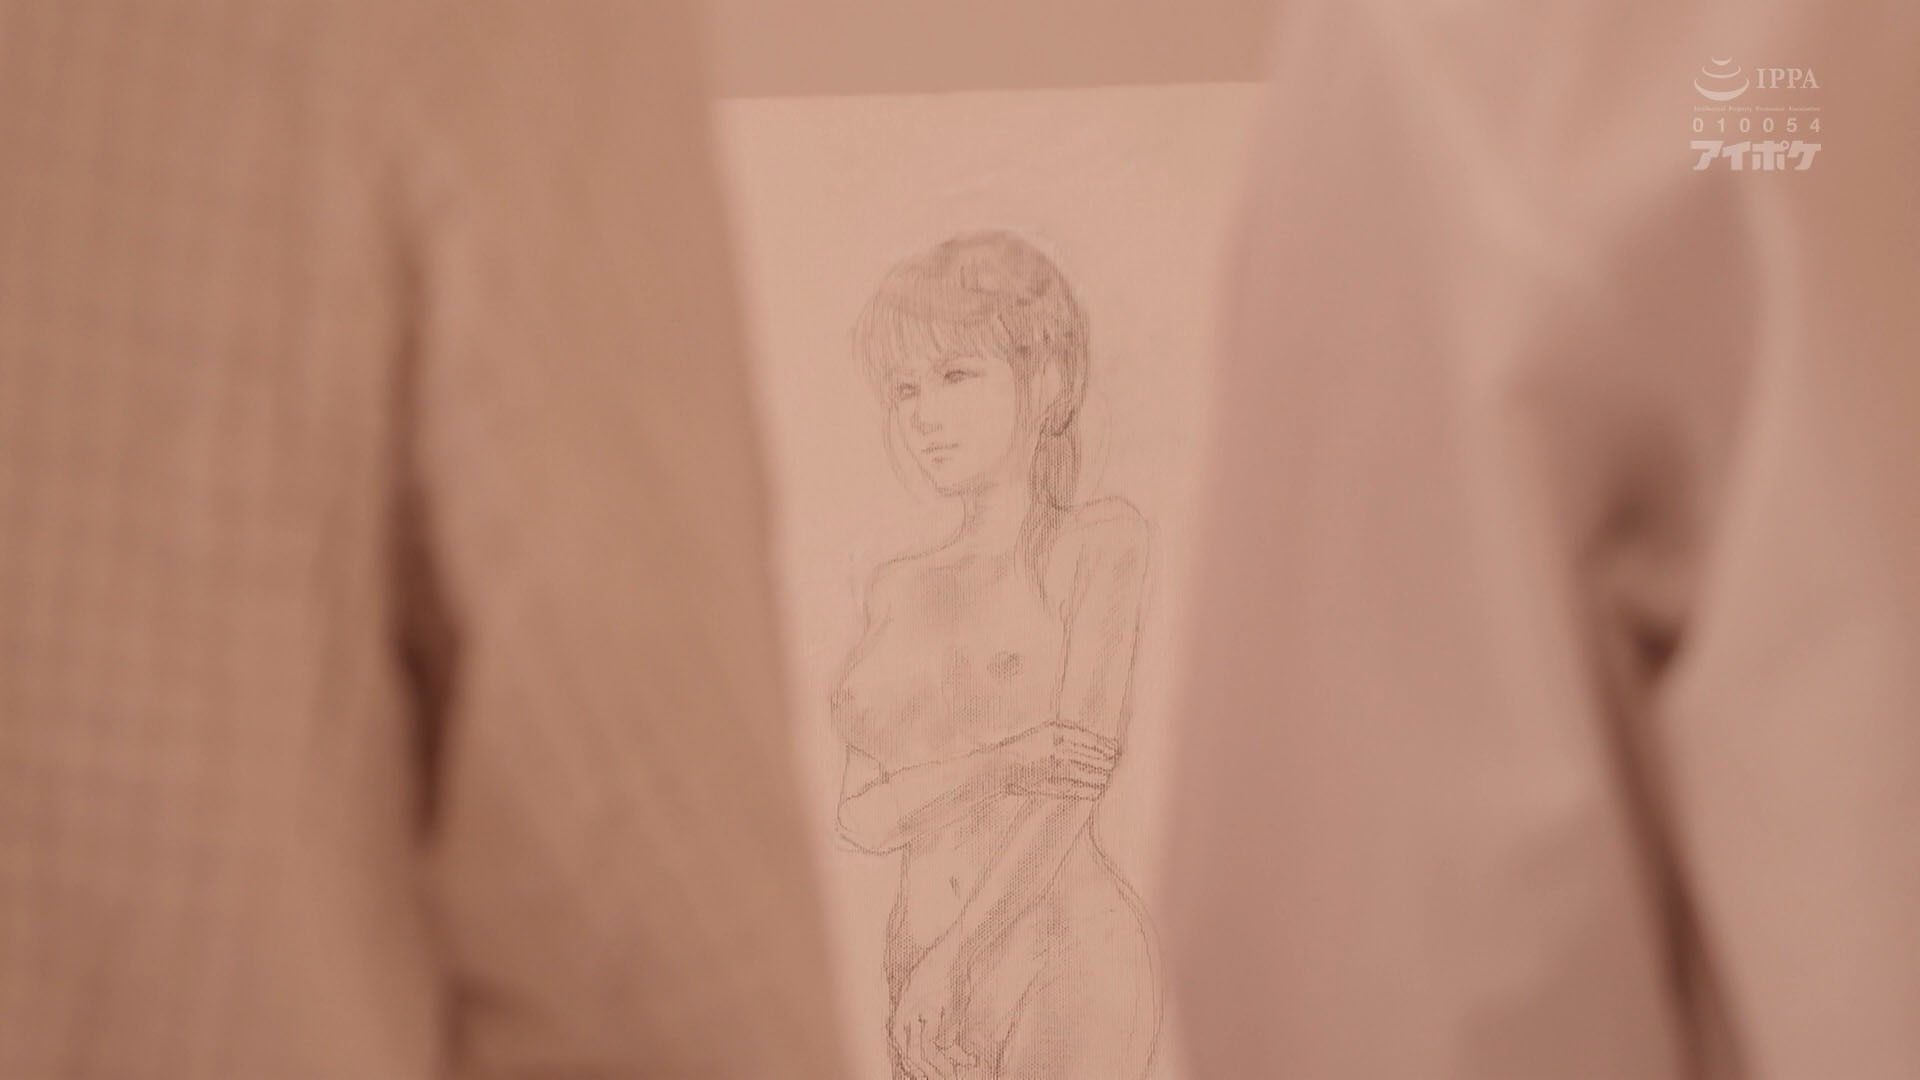 第39期 美术生枫花恋风评恐被害日本画室里的校园性欺凌事件